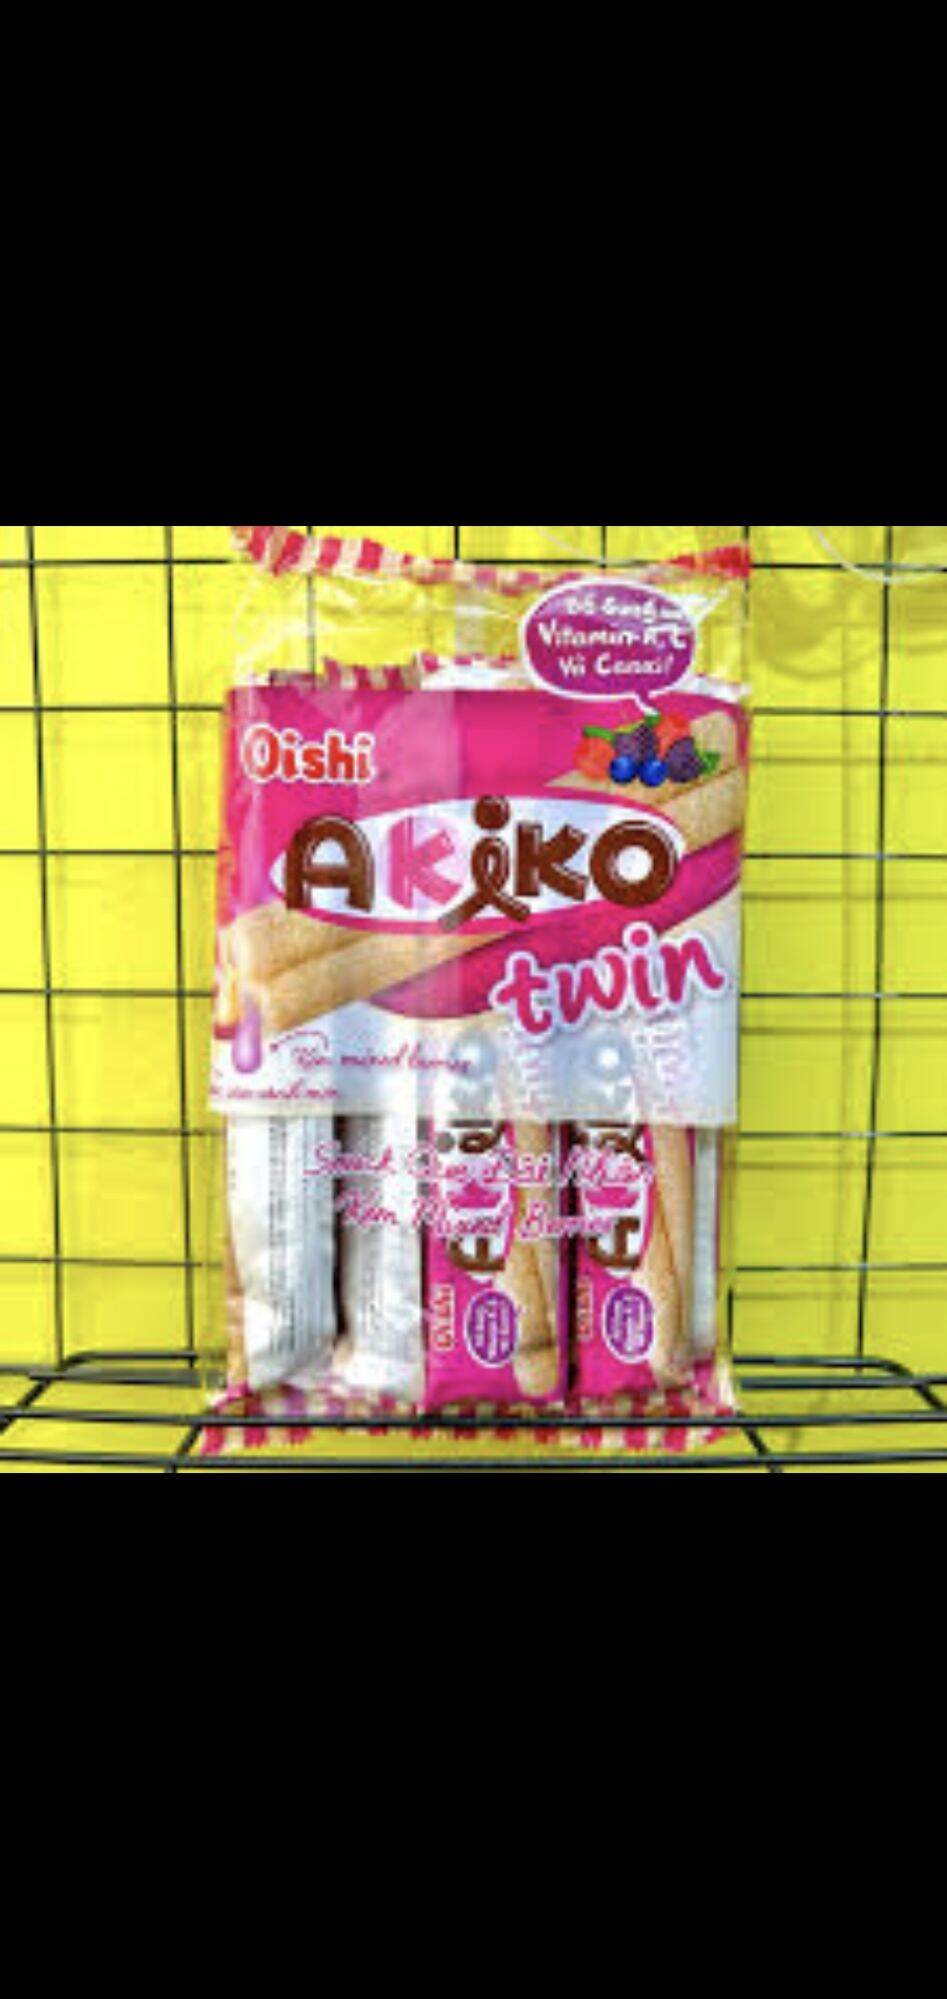 Bánh snack que đôi có nhân Oishi Akiko các vị gói 140g